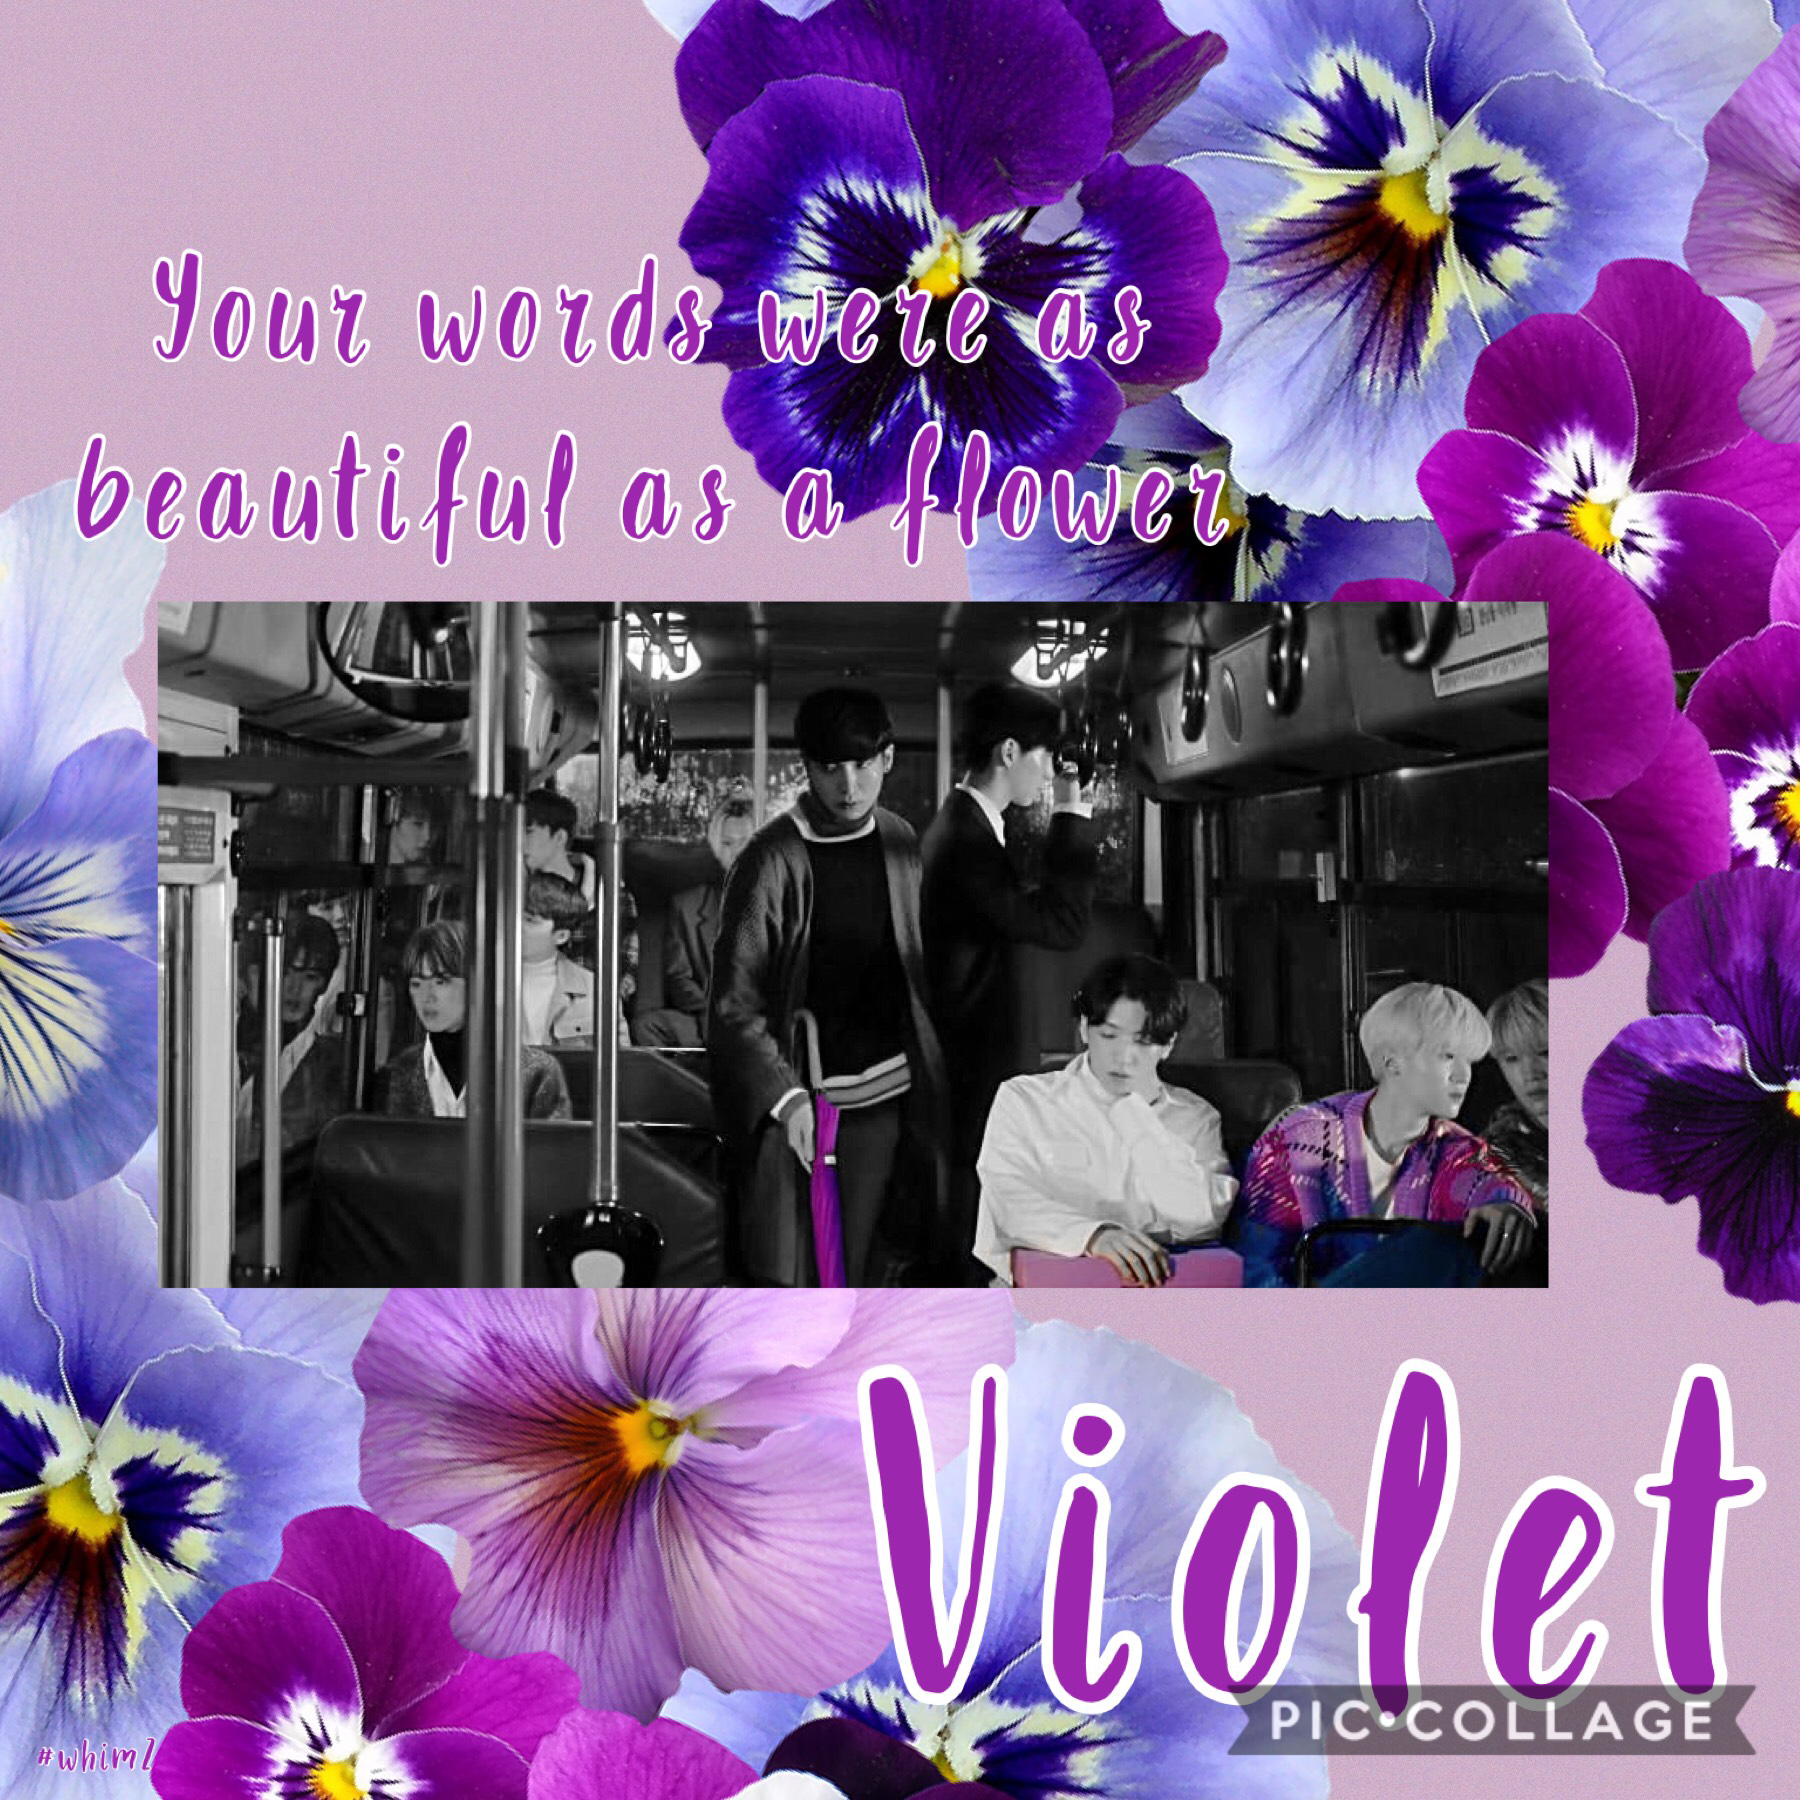 Violet edit part 1